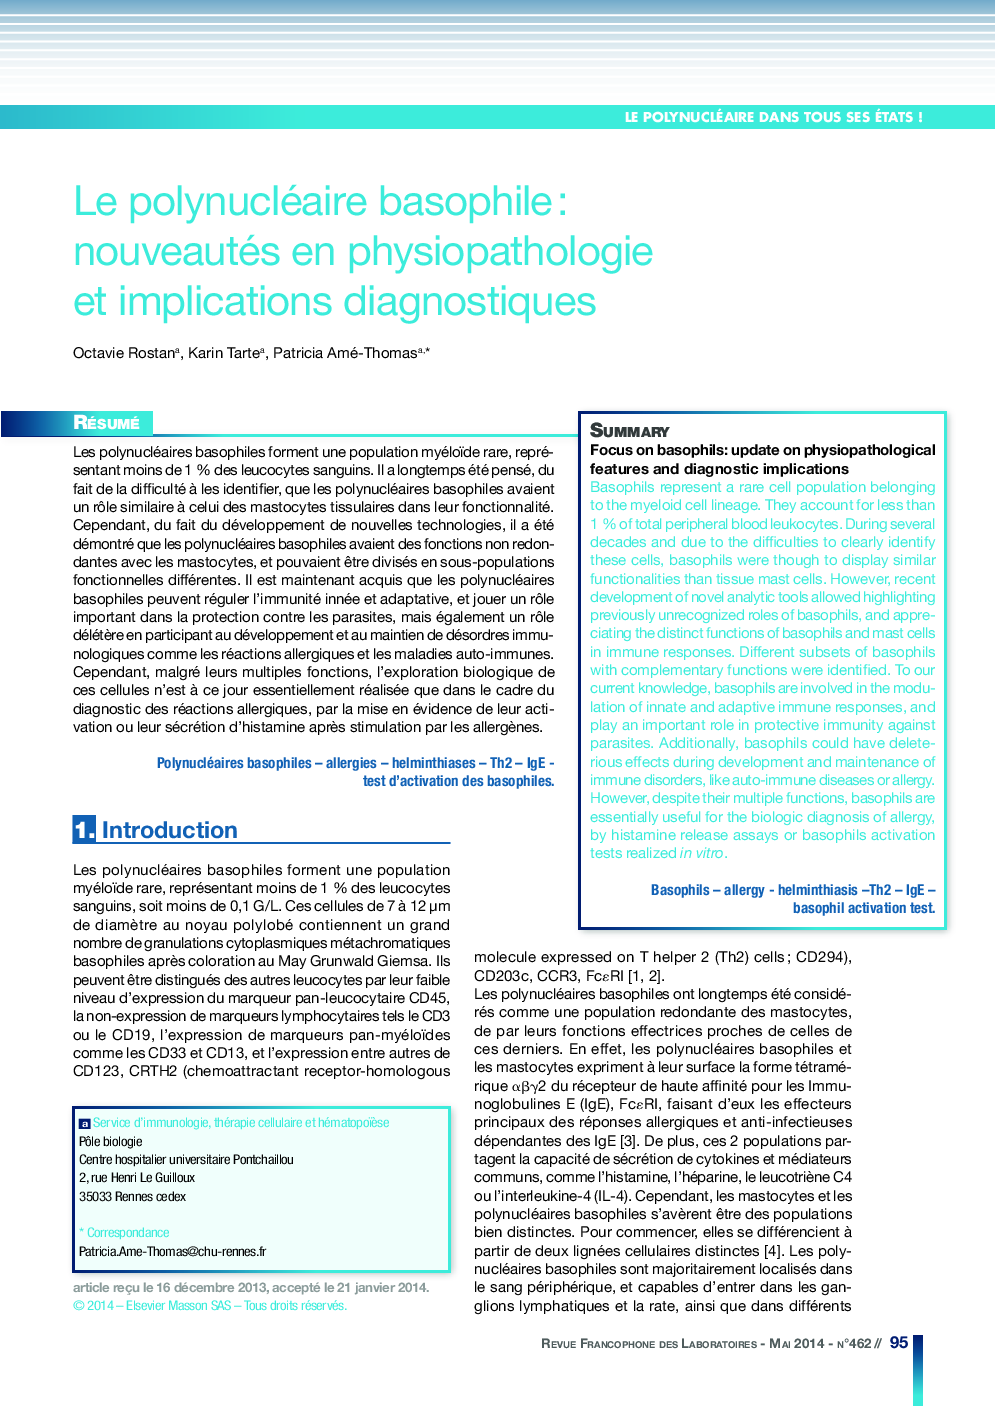 Le polynucléaire basophile: nouveautés en physiopathologie et implications diagnostiques